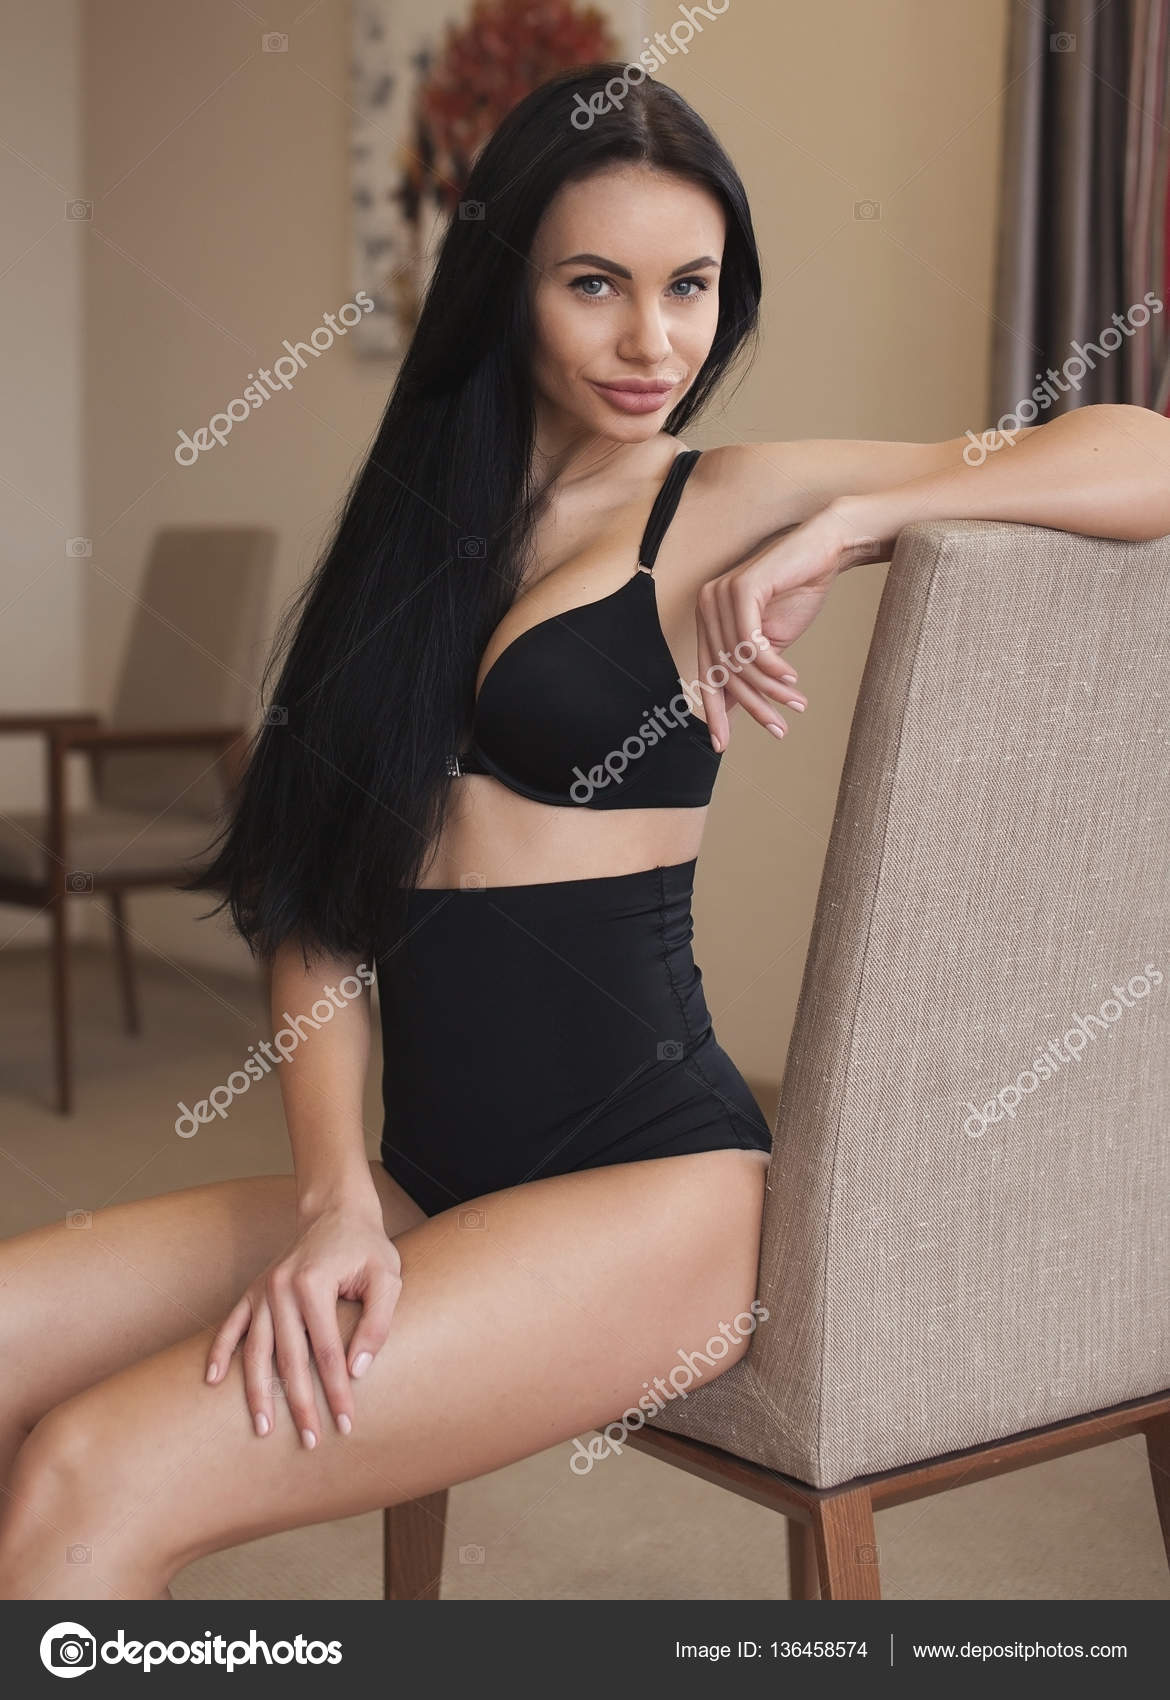 Сексуальная брюнетка в нижнем белье на кровати стоковое фото ©Lashkhidzetim 136458574